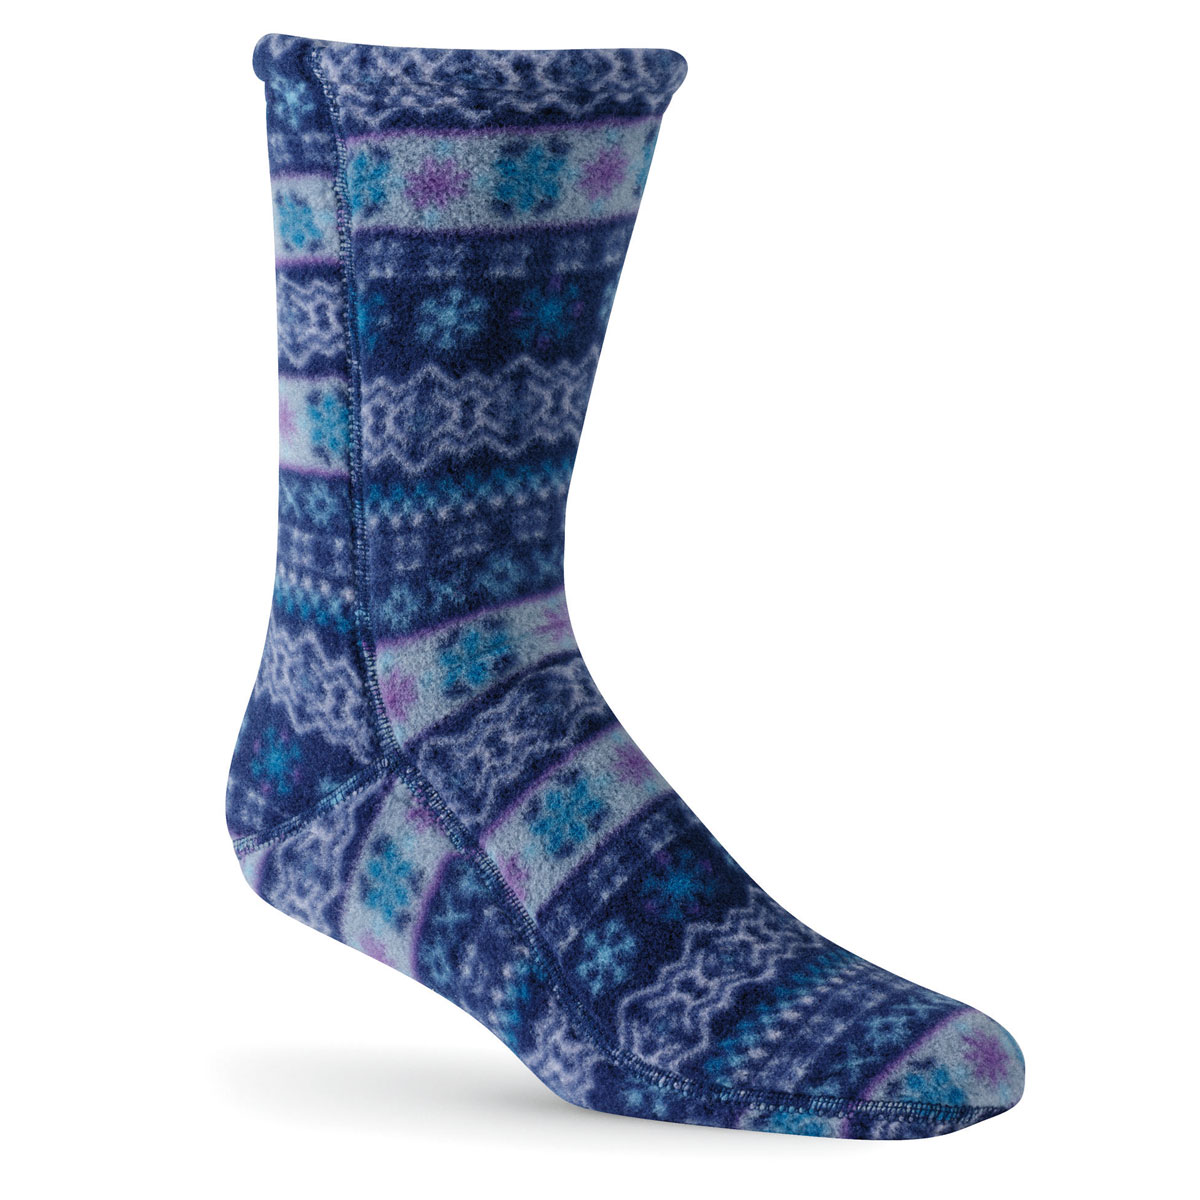 Unisex Acorn Versafit Socks